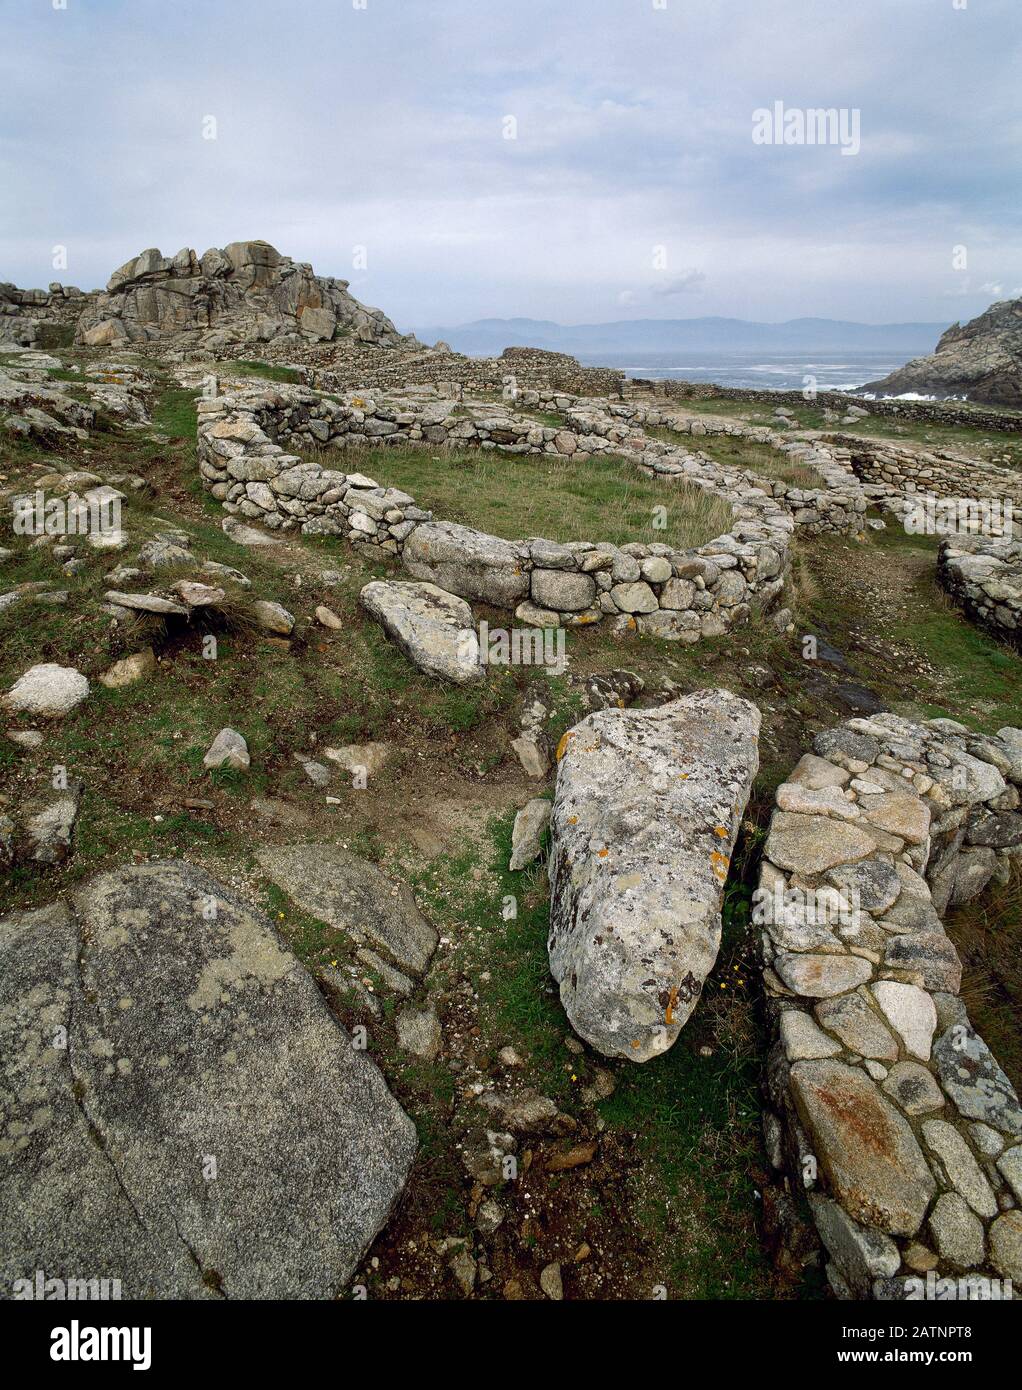 Castro von Baroña. Eiszeitliche Siedlung, 1. Jahrhundert v. Chr. - 1. Jahrhundert n. Chr. Galicien, Provinz La Coruña, Spanien. Stockfoto